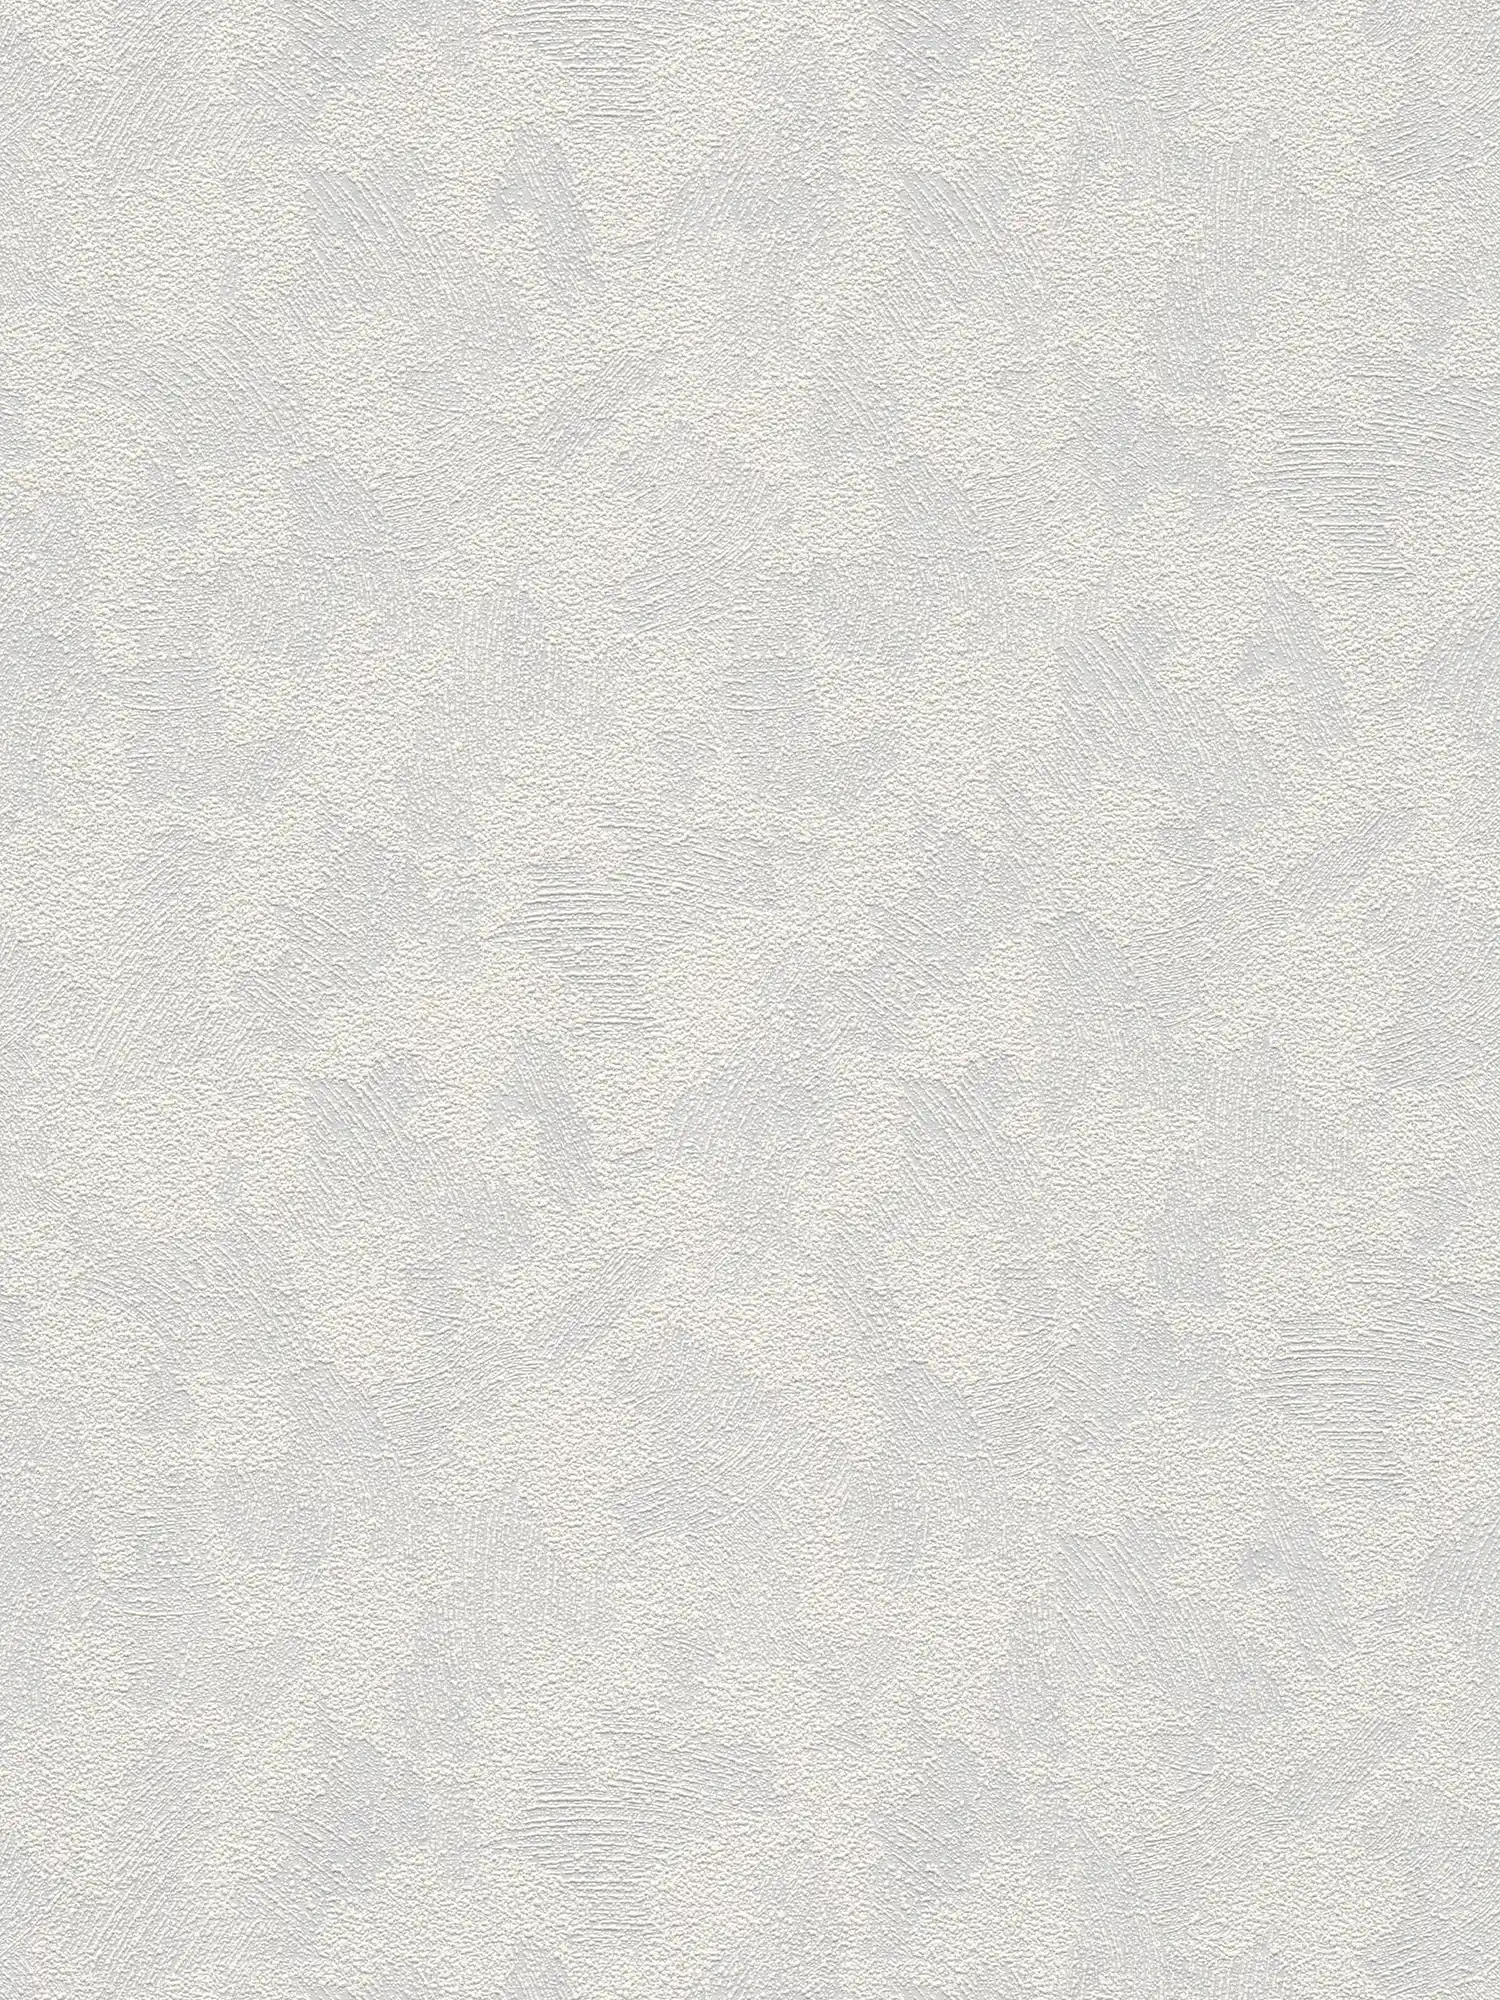 Textuurbehang met driedimensionale gipslook - overschilderbaar, wit
